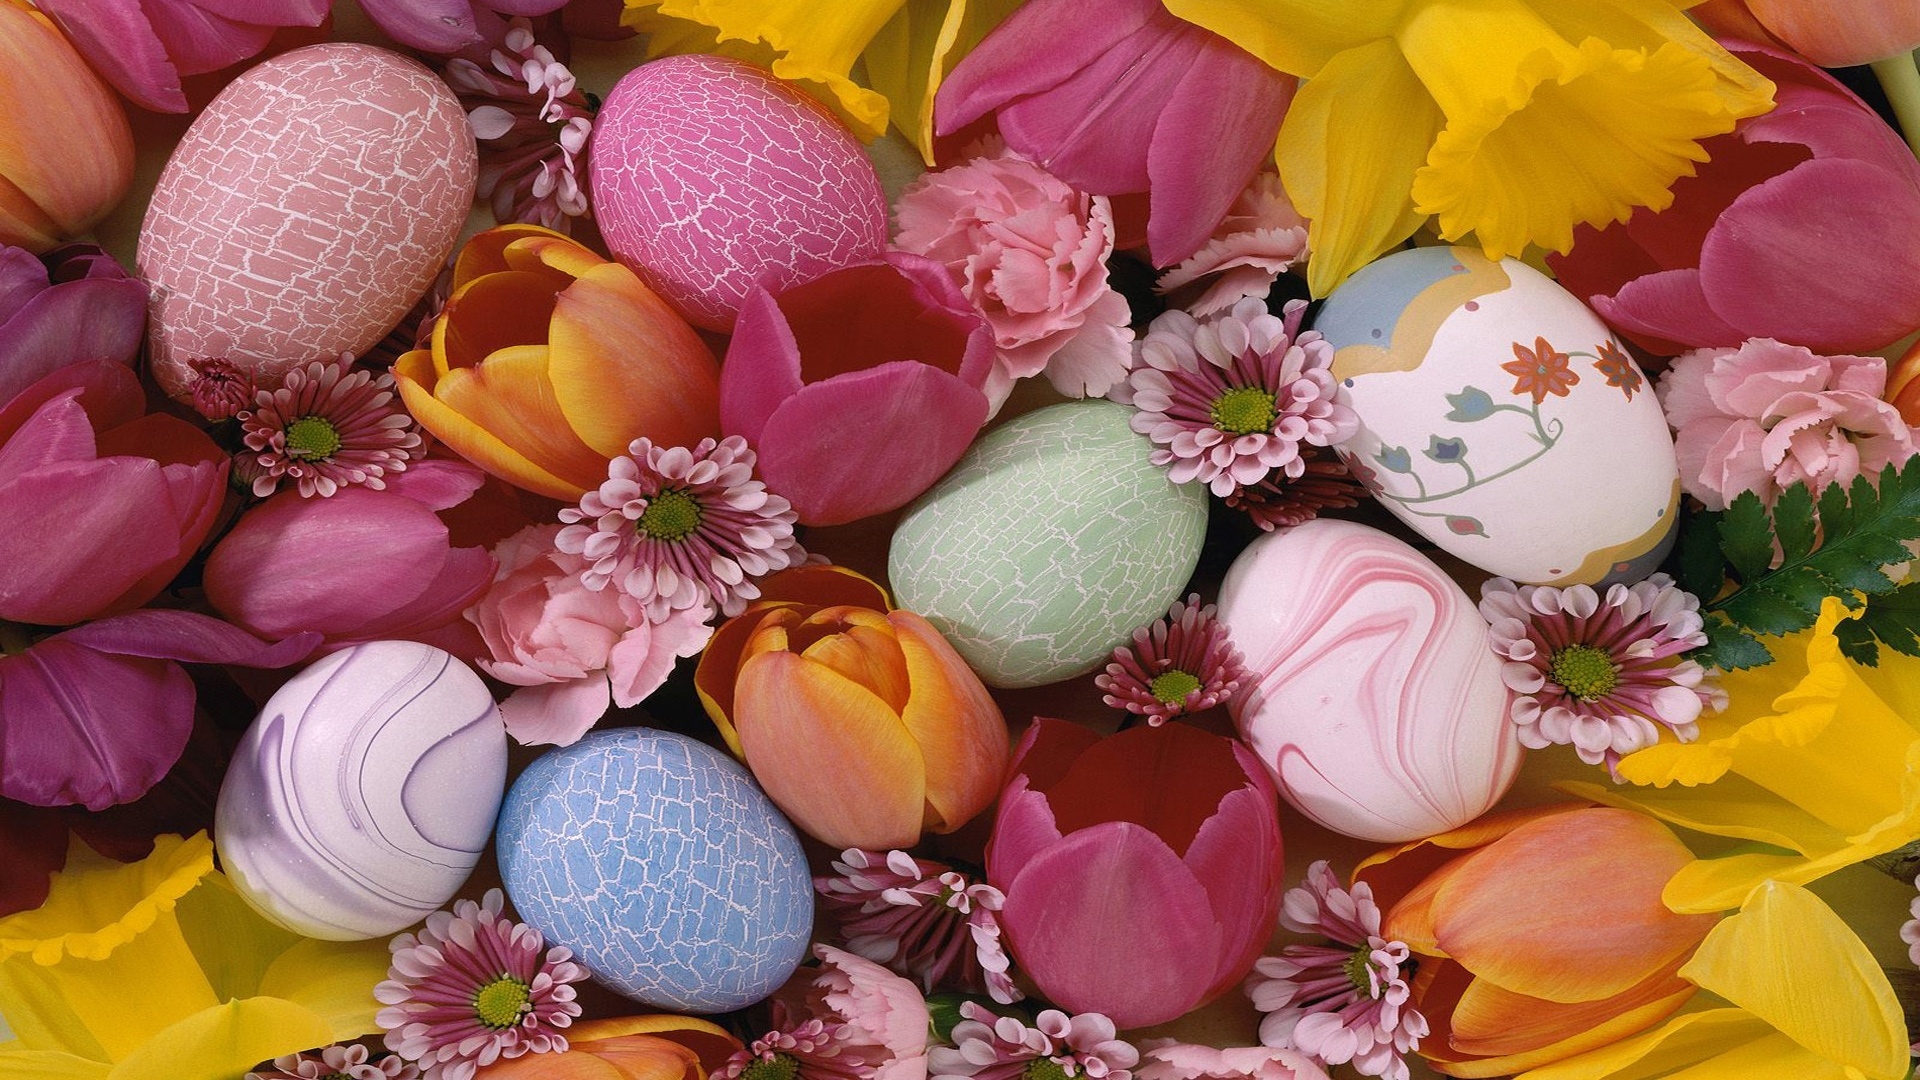 Easter Pastel Eggs for 1920 x 1080 HDTV 1080p resolution